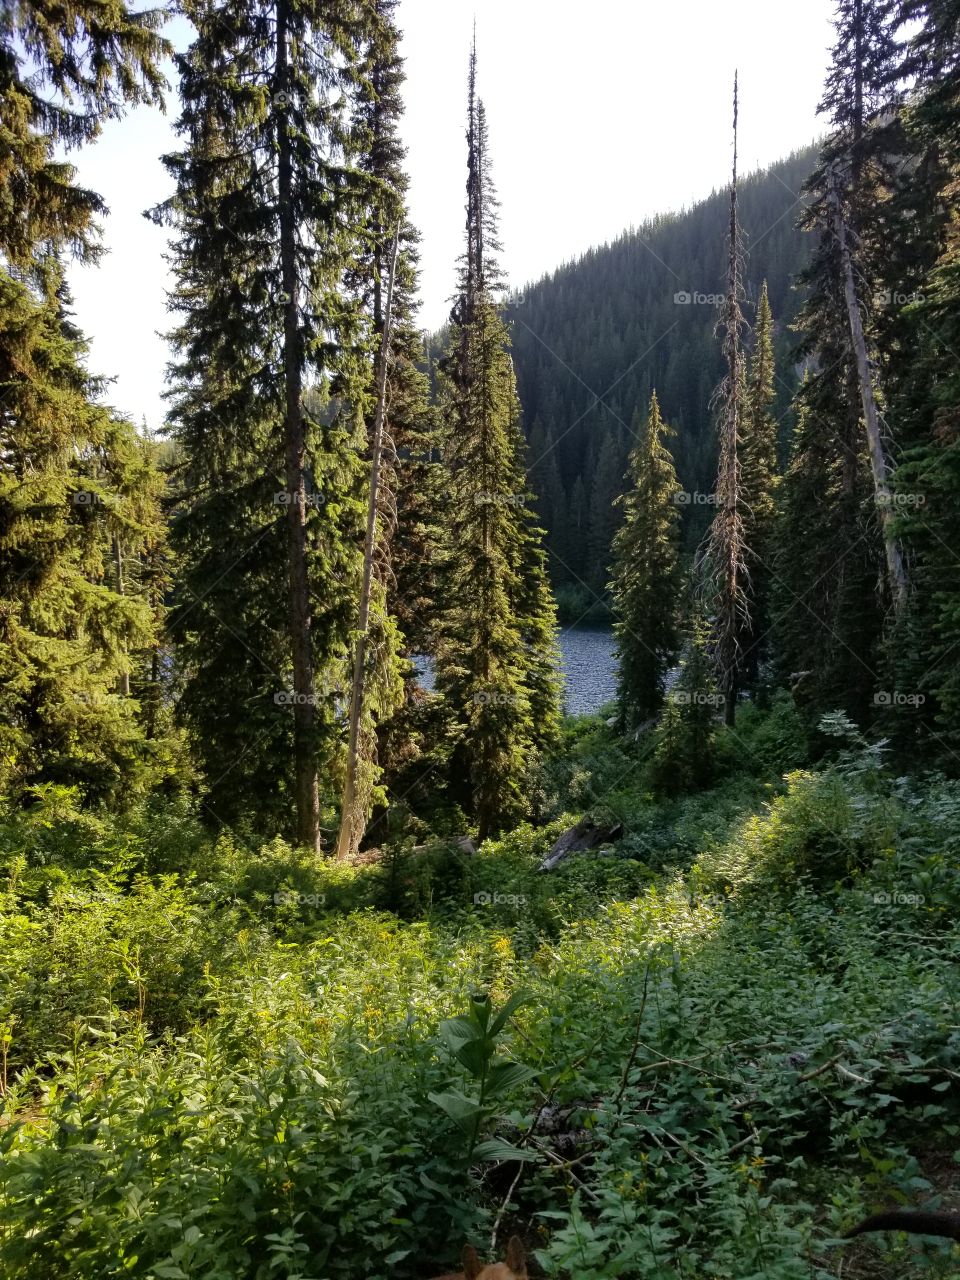 Mountain lakes in Montana